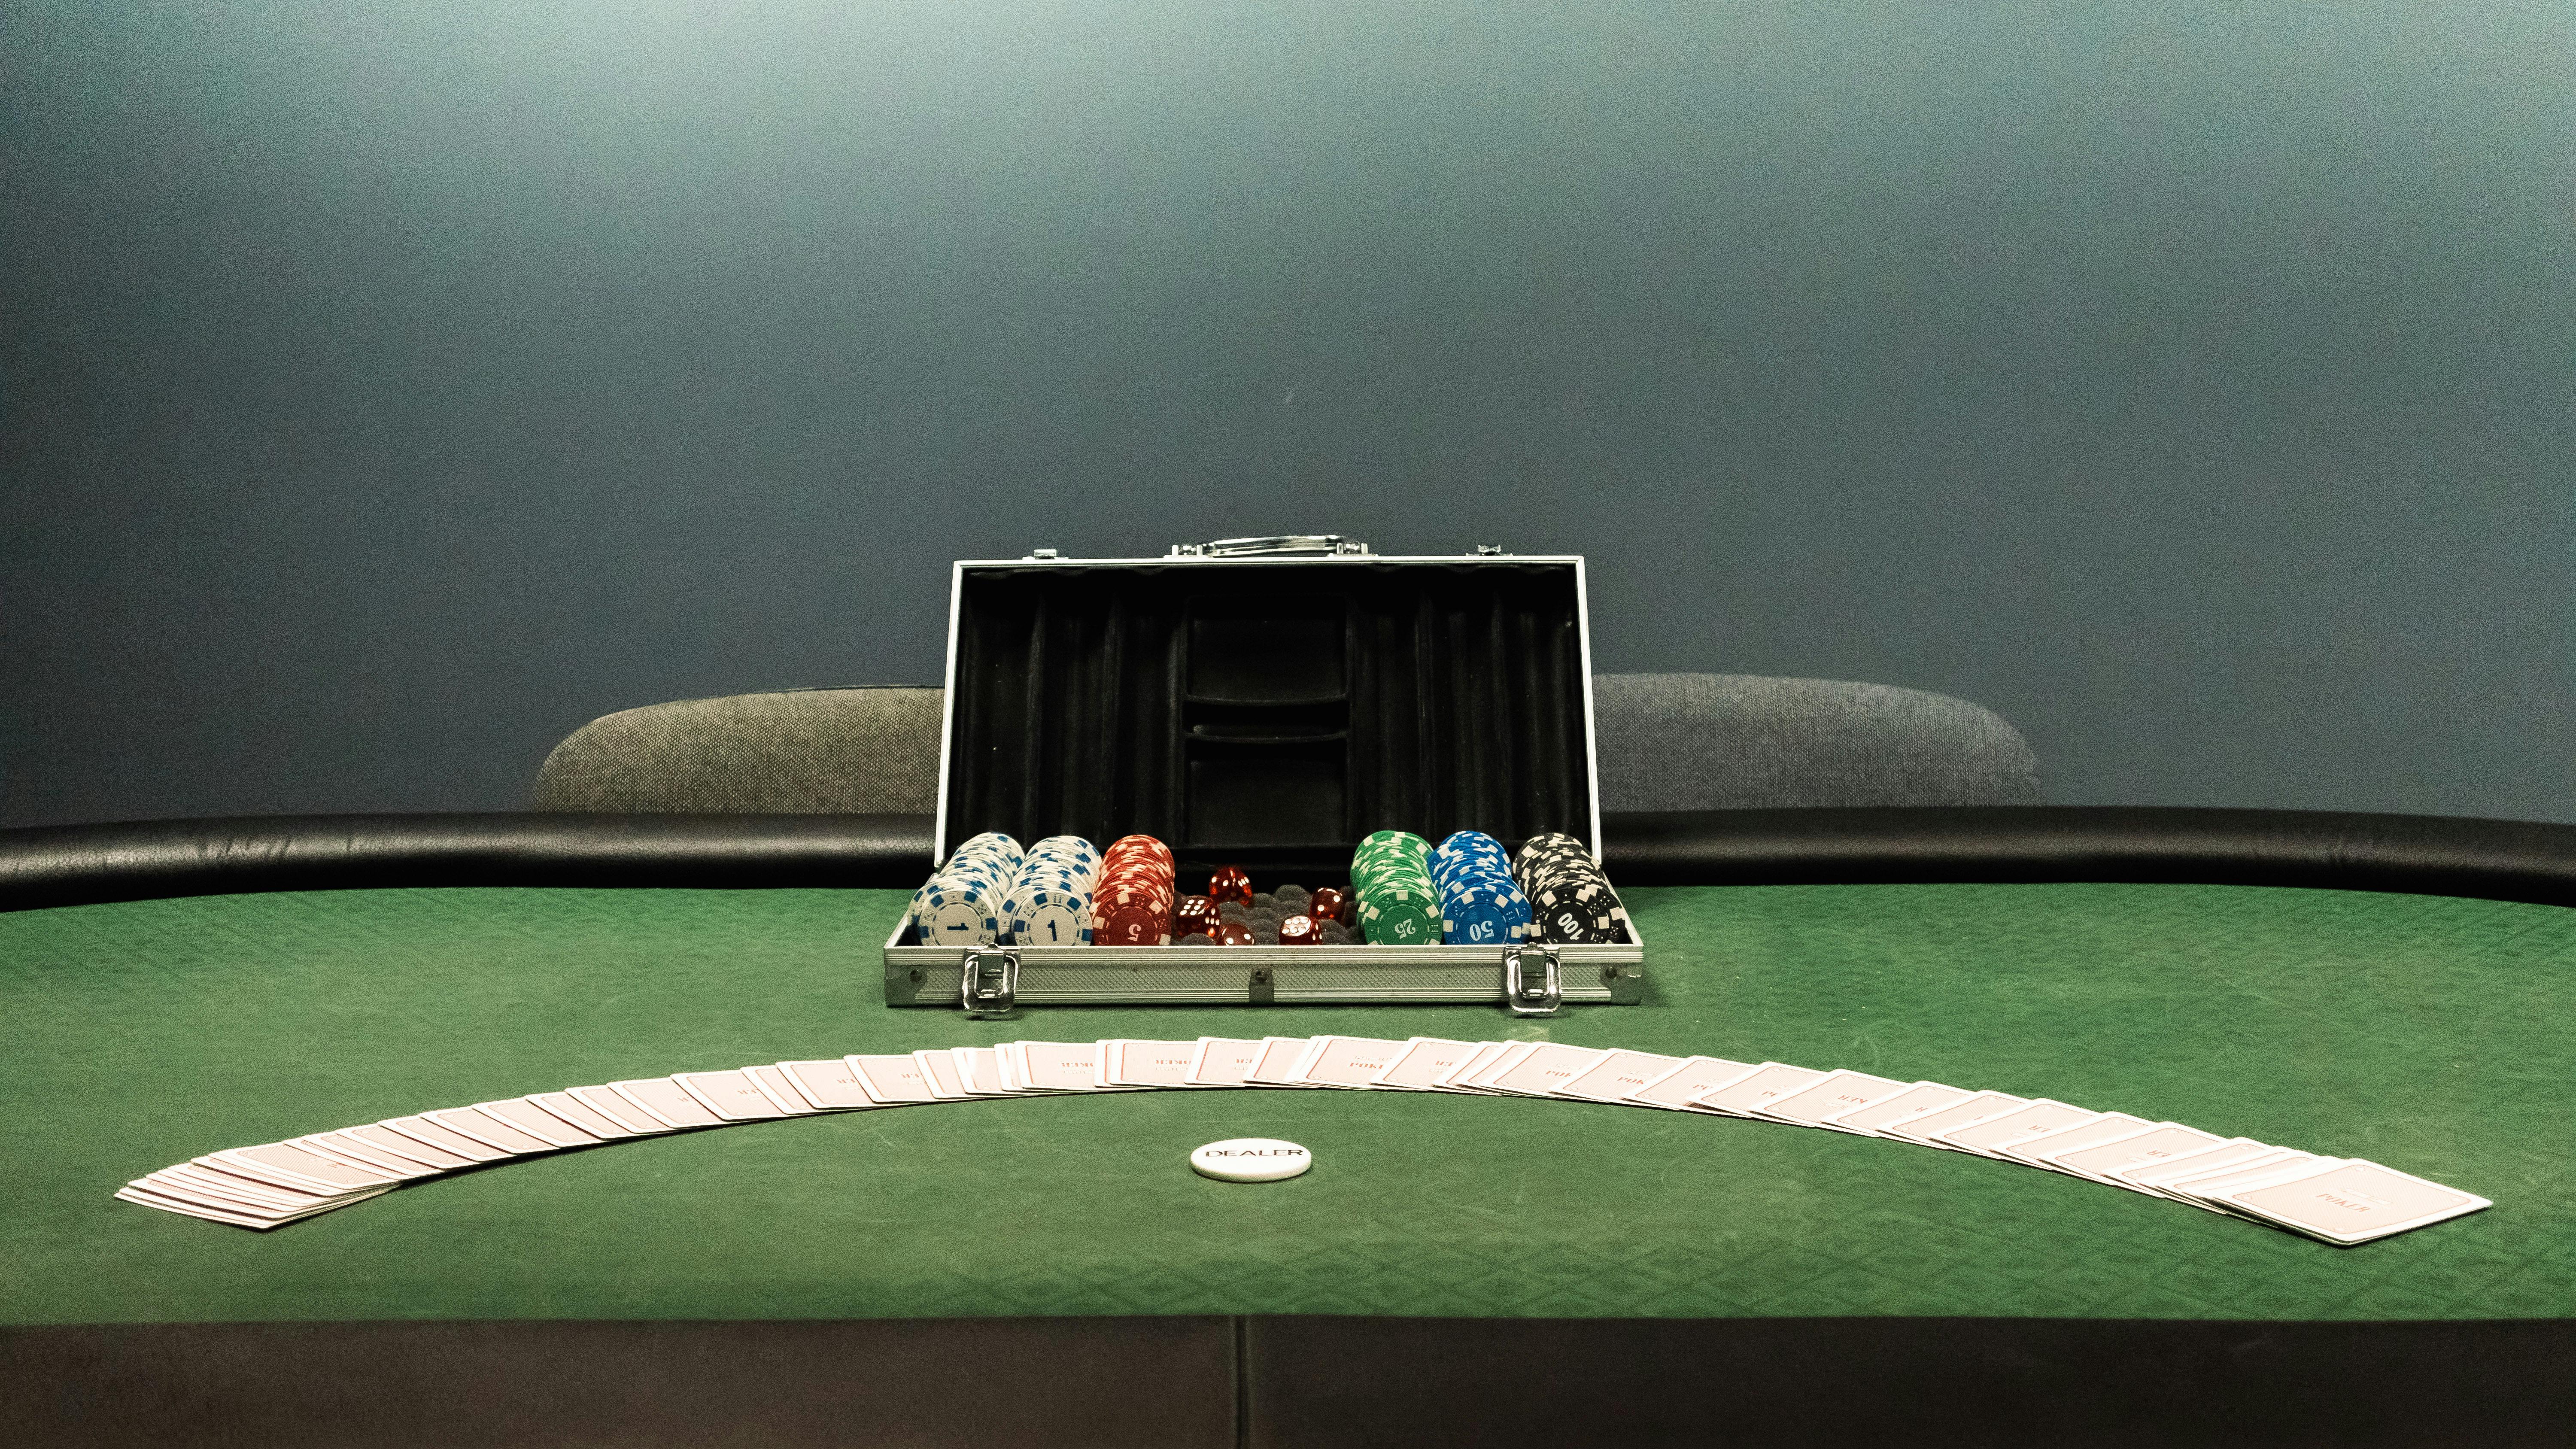 Disposición de una mesa de póquer | Fuente: Pexels